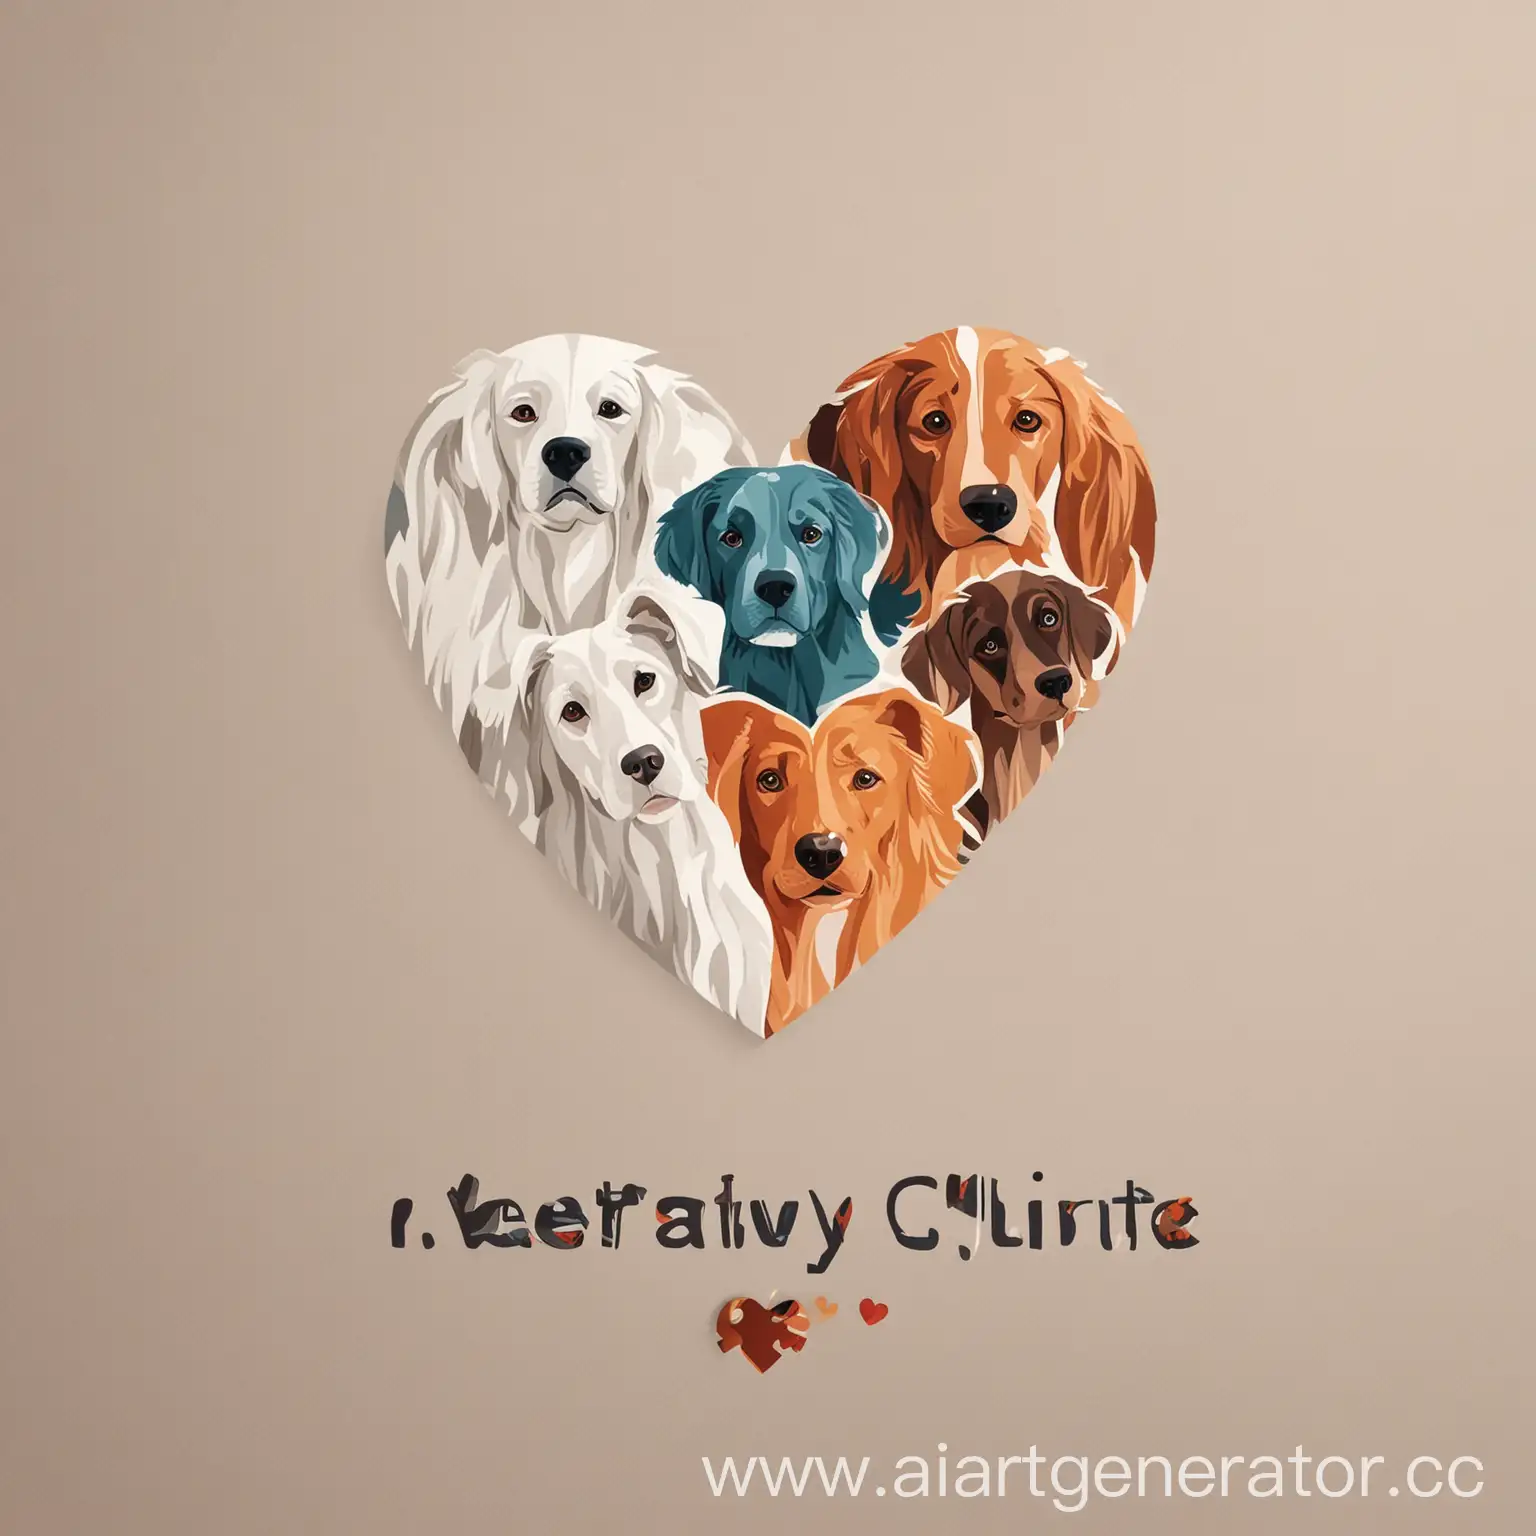 иллюстративный логотип для ветеринарной клиники в виде сердца, которое состоит из пяти собак. как пазл. в стиле минимализм